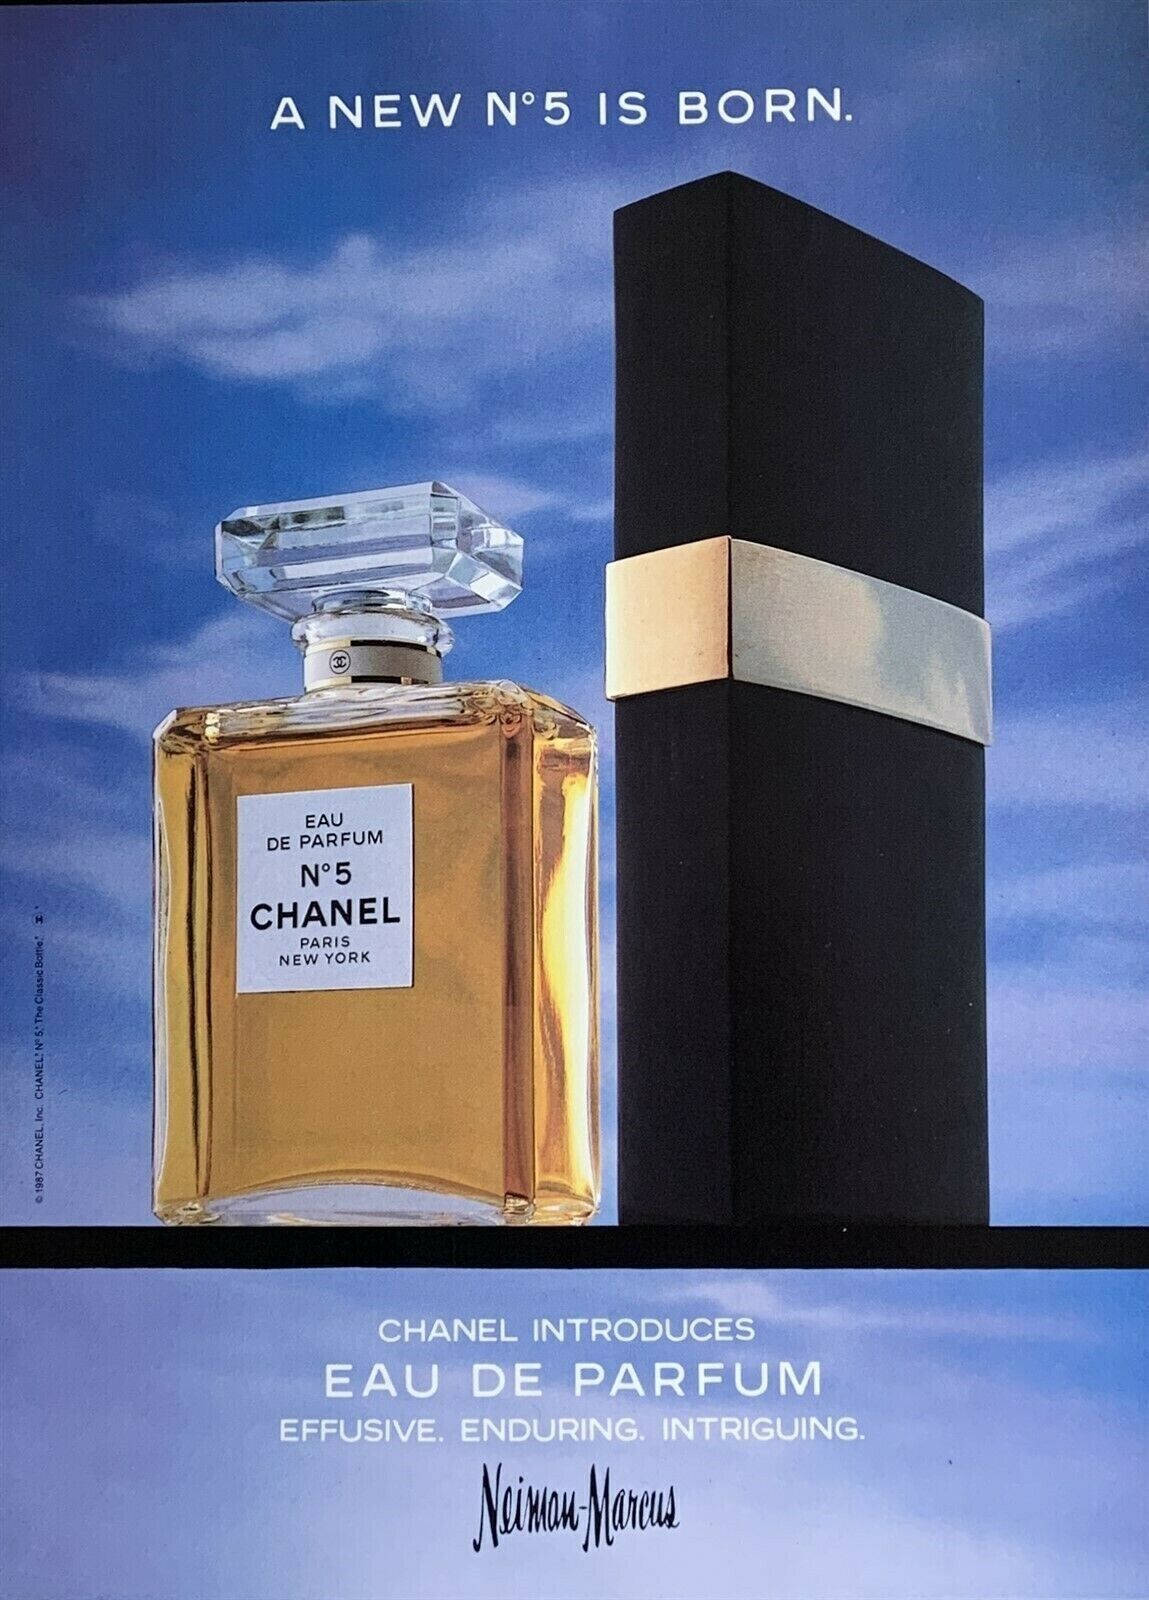 1987 CHANEL N°5 Eau de Parfum A New N°5 is Born Vintage PRINT AD